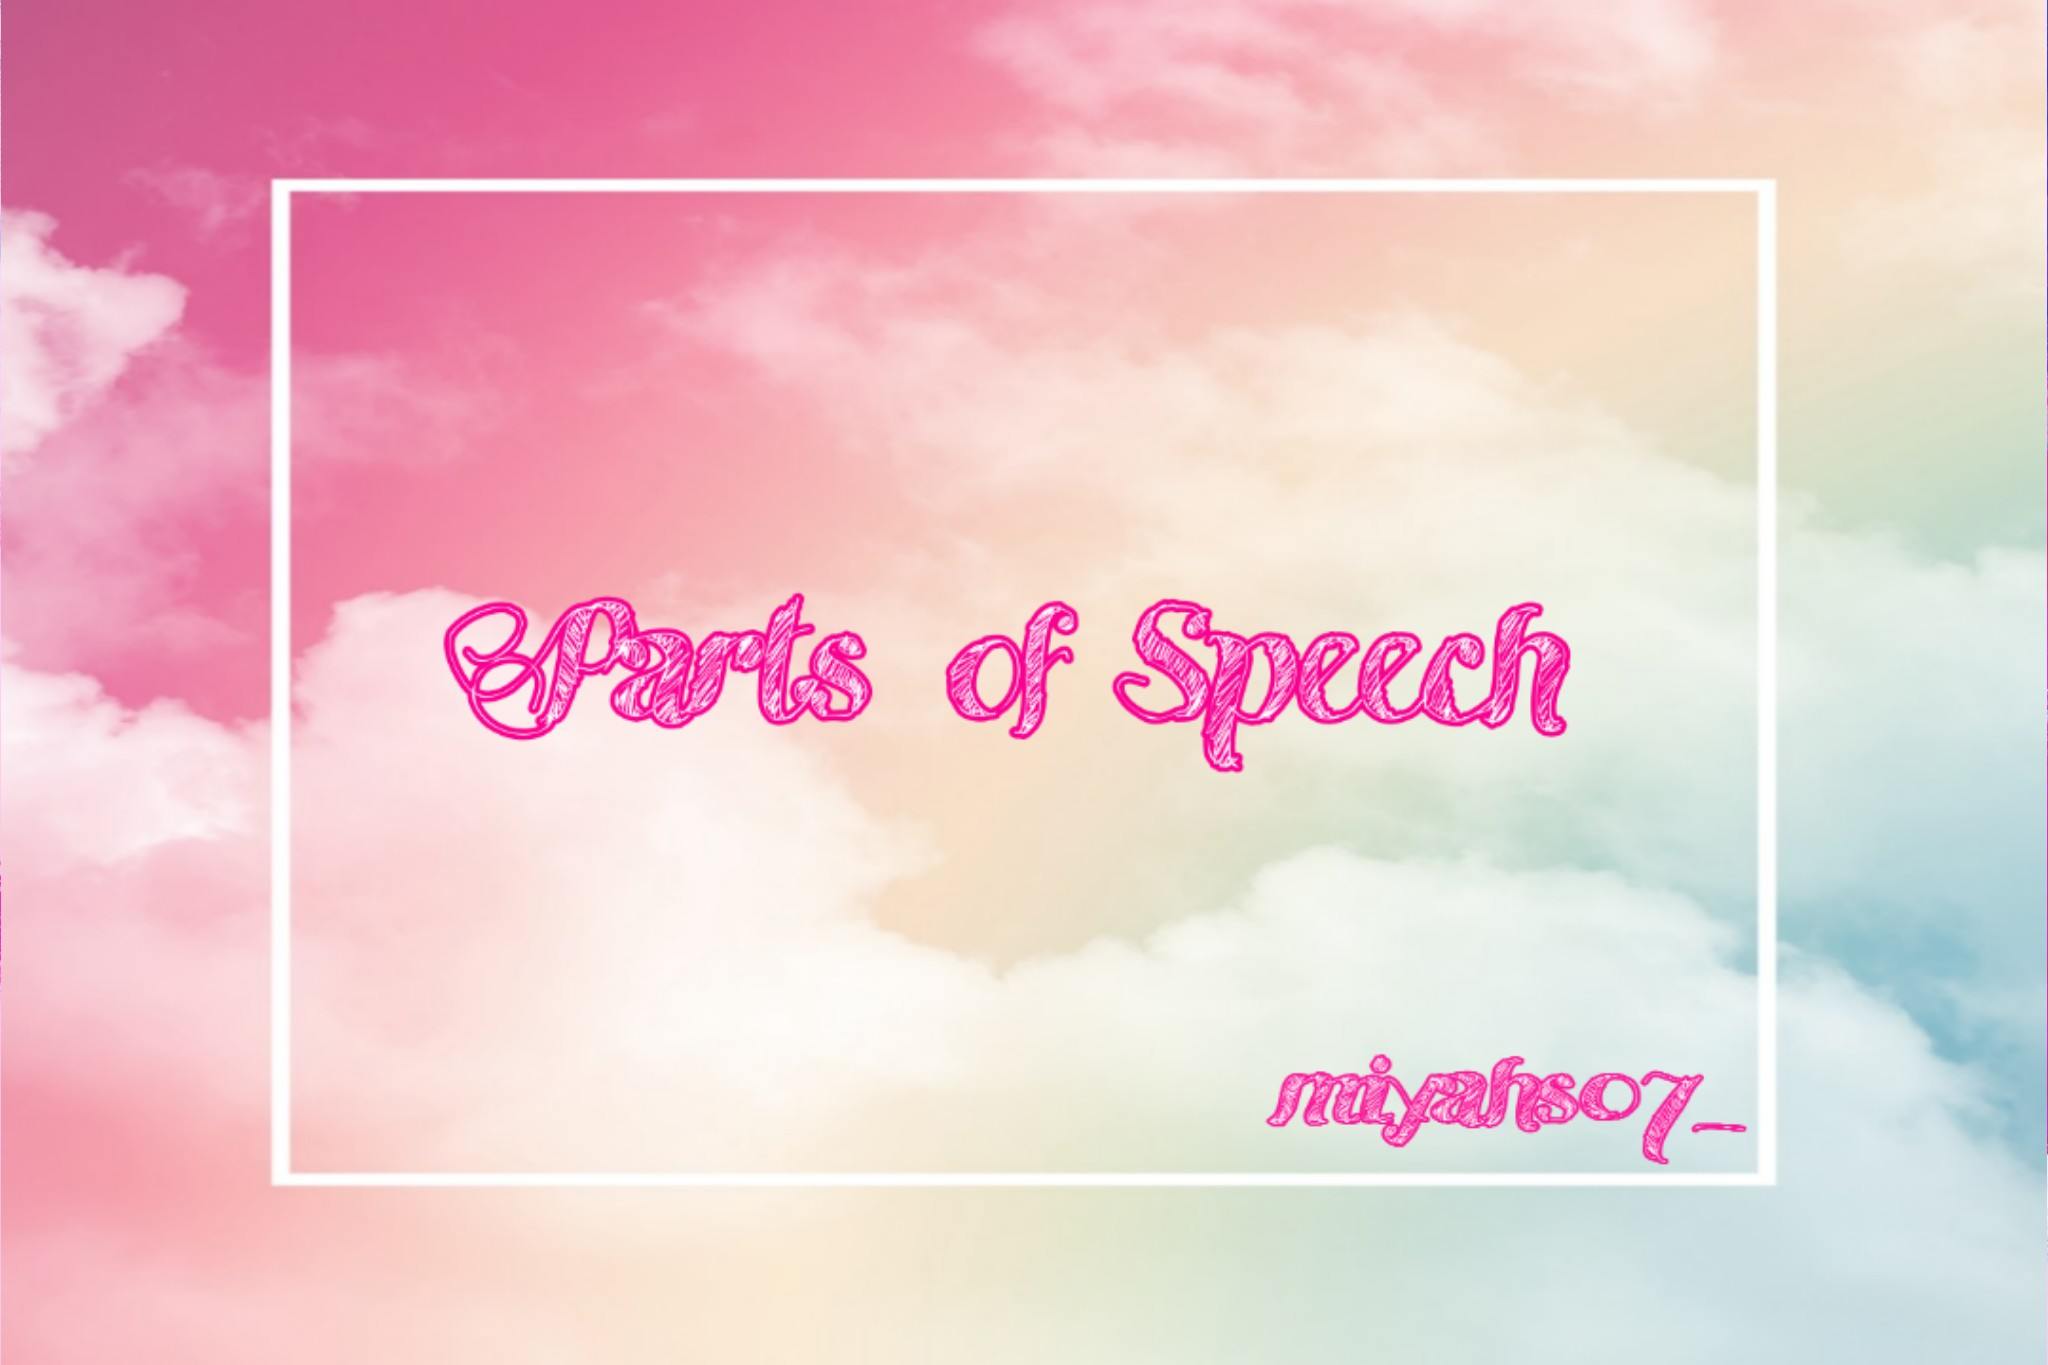 Ketahui 8 Parts Of Speech Dalam Bahasa Inggris Berikut Ini